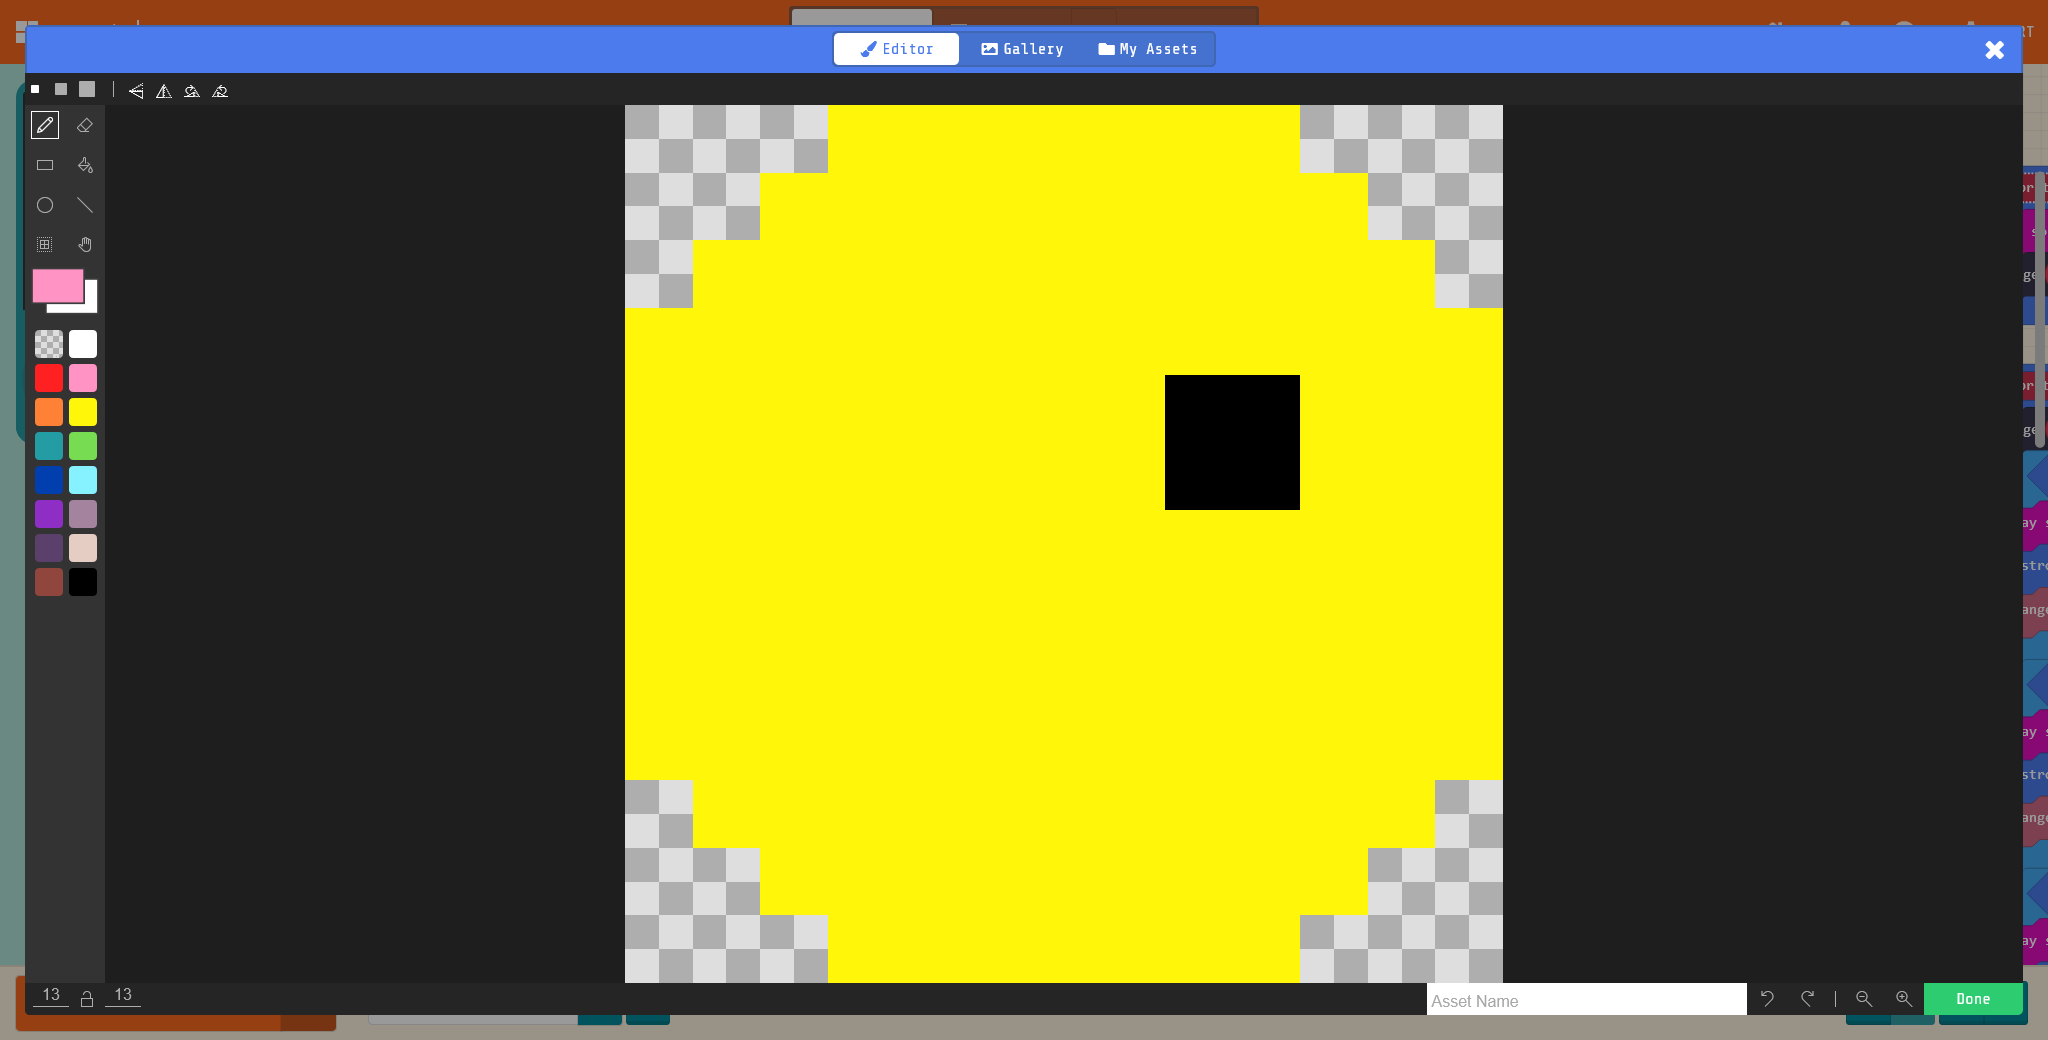 Novo jogo em realidade aumentada vai colocar o Pac-Man no Google Maps